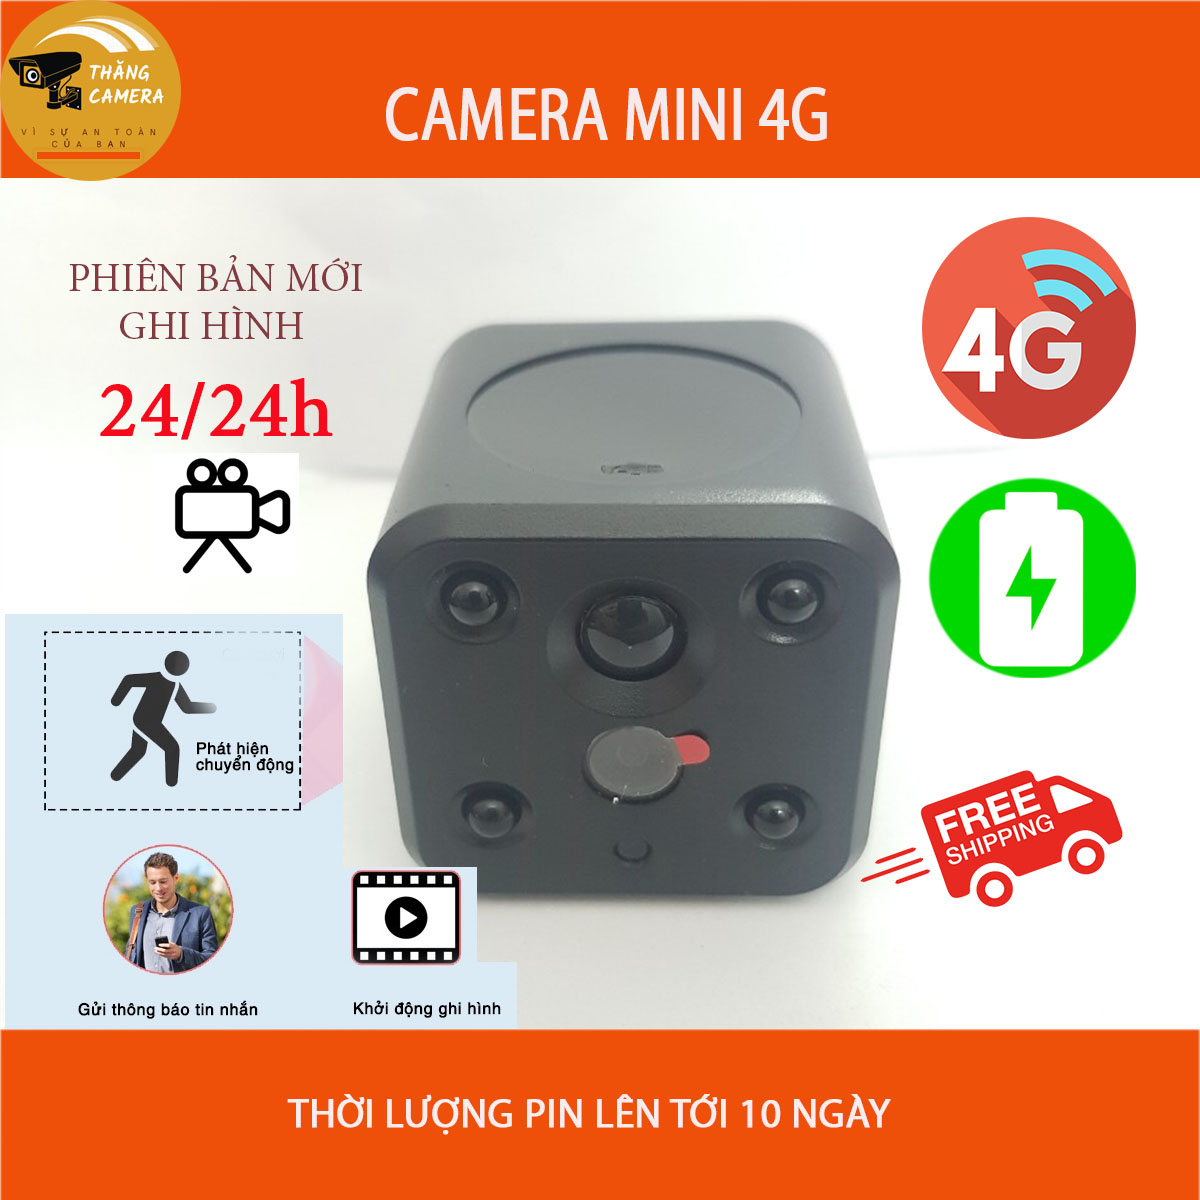 Camera 4G Dùng Sim, Phát Hiện Chuyển Động, Thời Lượng Pin Lâu, Hàng Chính Hãng